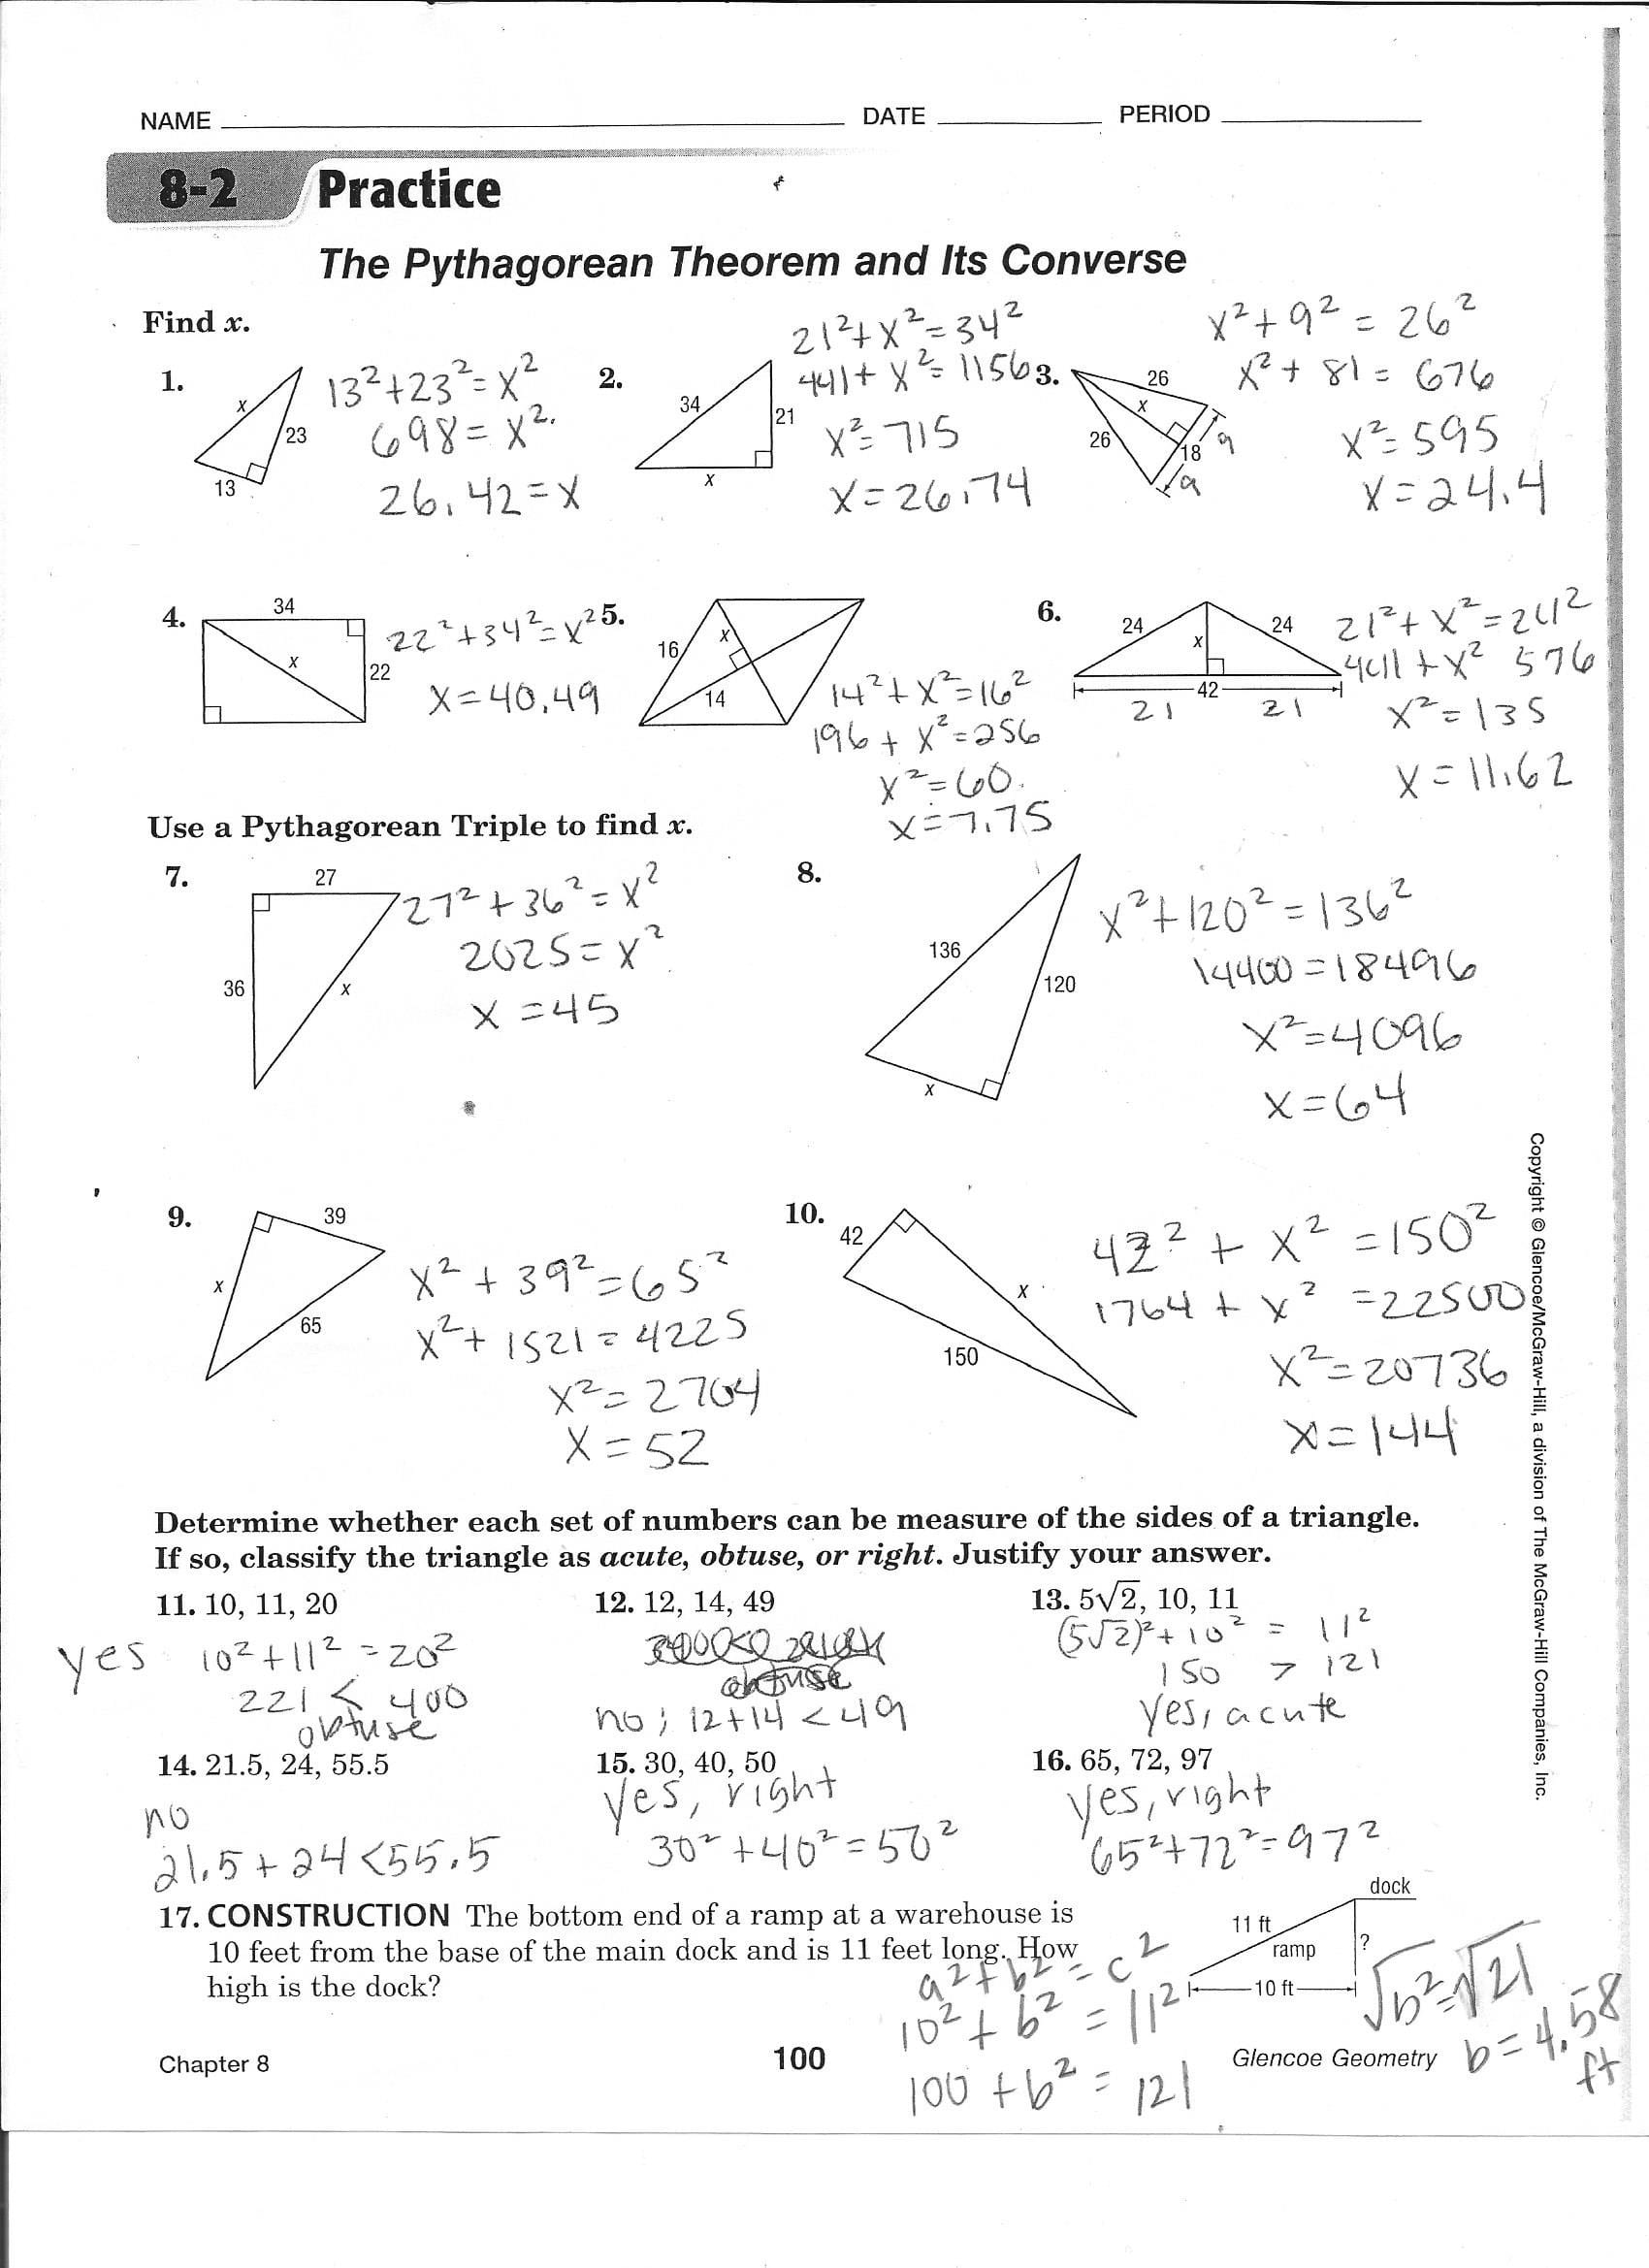 trigonometry homework sheet you are a csi investigator